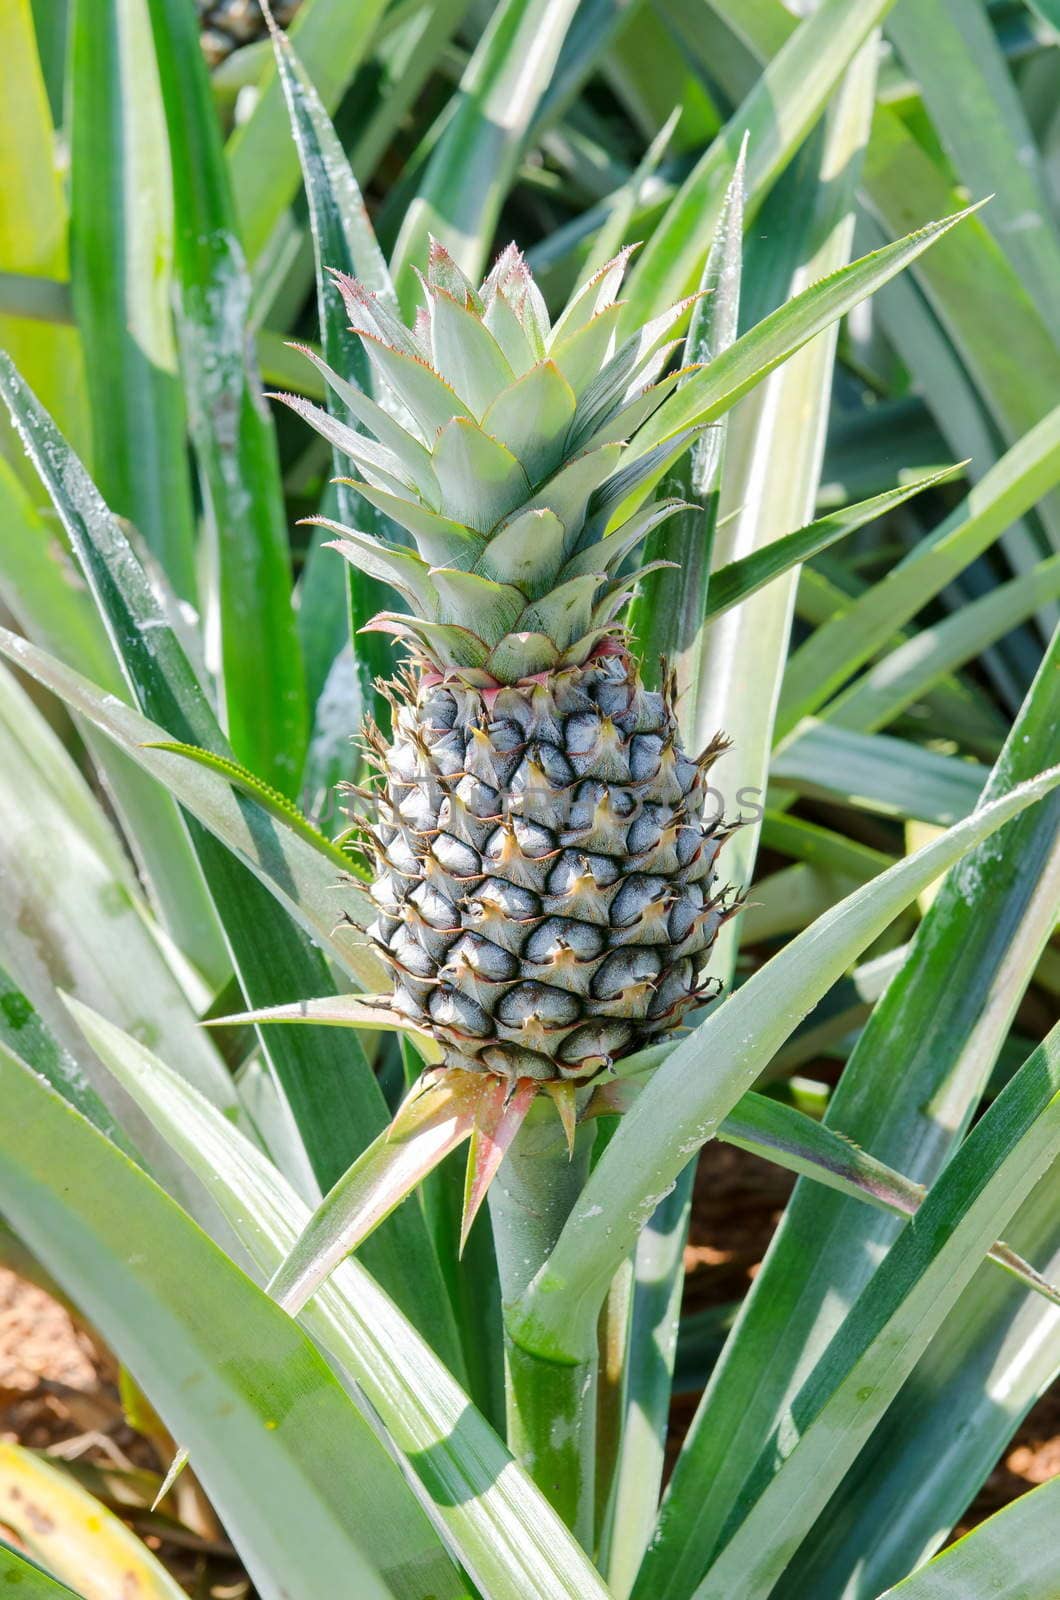 fresh pineapple in the farm, Thailand